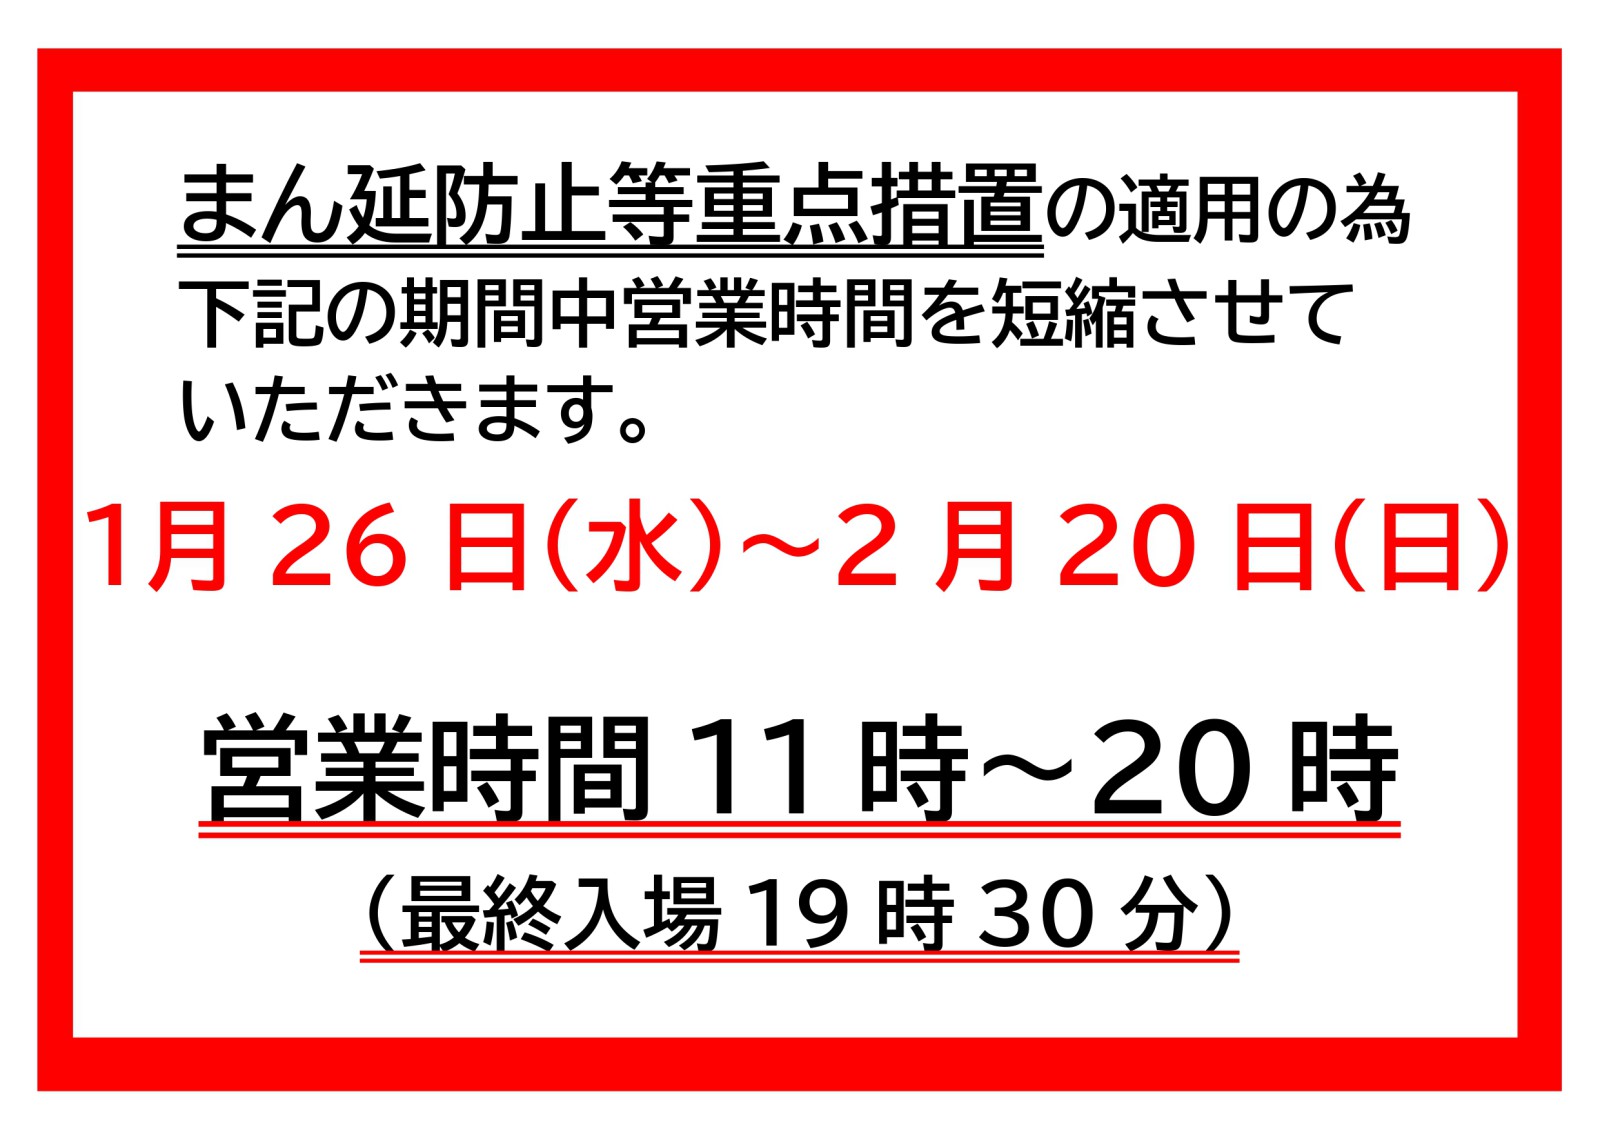 【ふれあいセンター】営業時間変更のお知らせ（1/26～2/20）※1/26時点変更あり